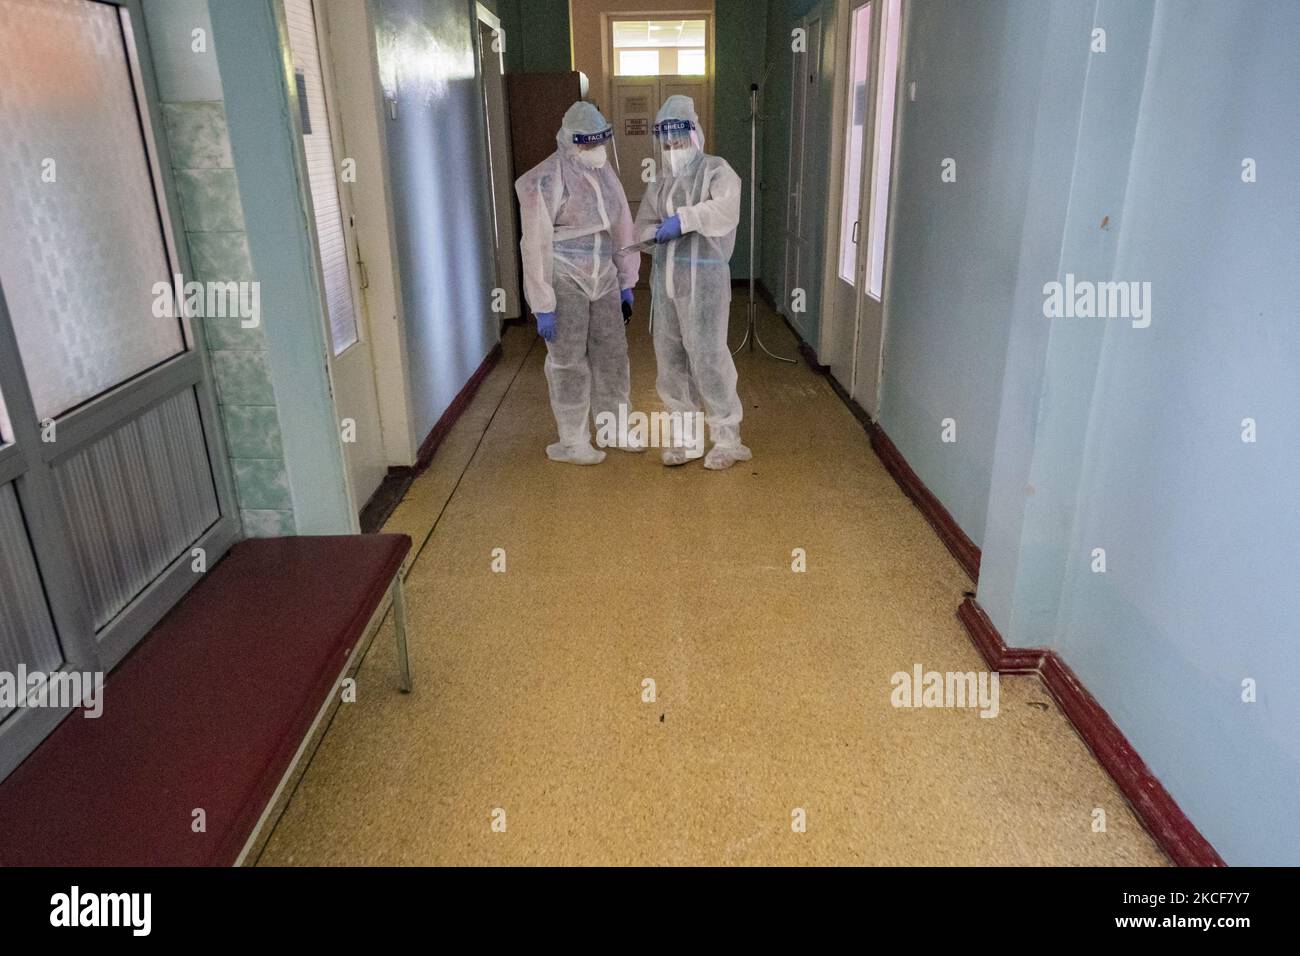 Am 25. Mai 2021 diskutieren die Mitarbeiter des Gesundheitswesens mit ihren persönlichen Schutzausrüstungen über die Behandlung der 19 Patienten in der Intensivstation eines Krankenhauses in Kiew, Ukraine. (Foto von Celestino Arce/NurPhoto) Stockfoto